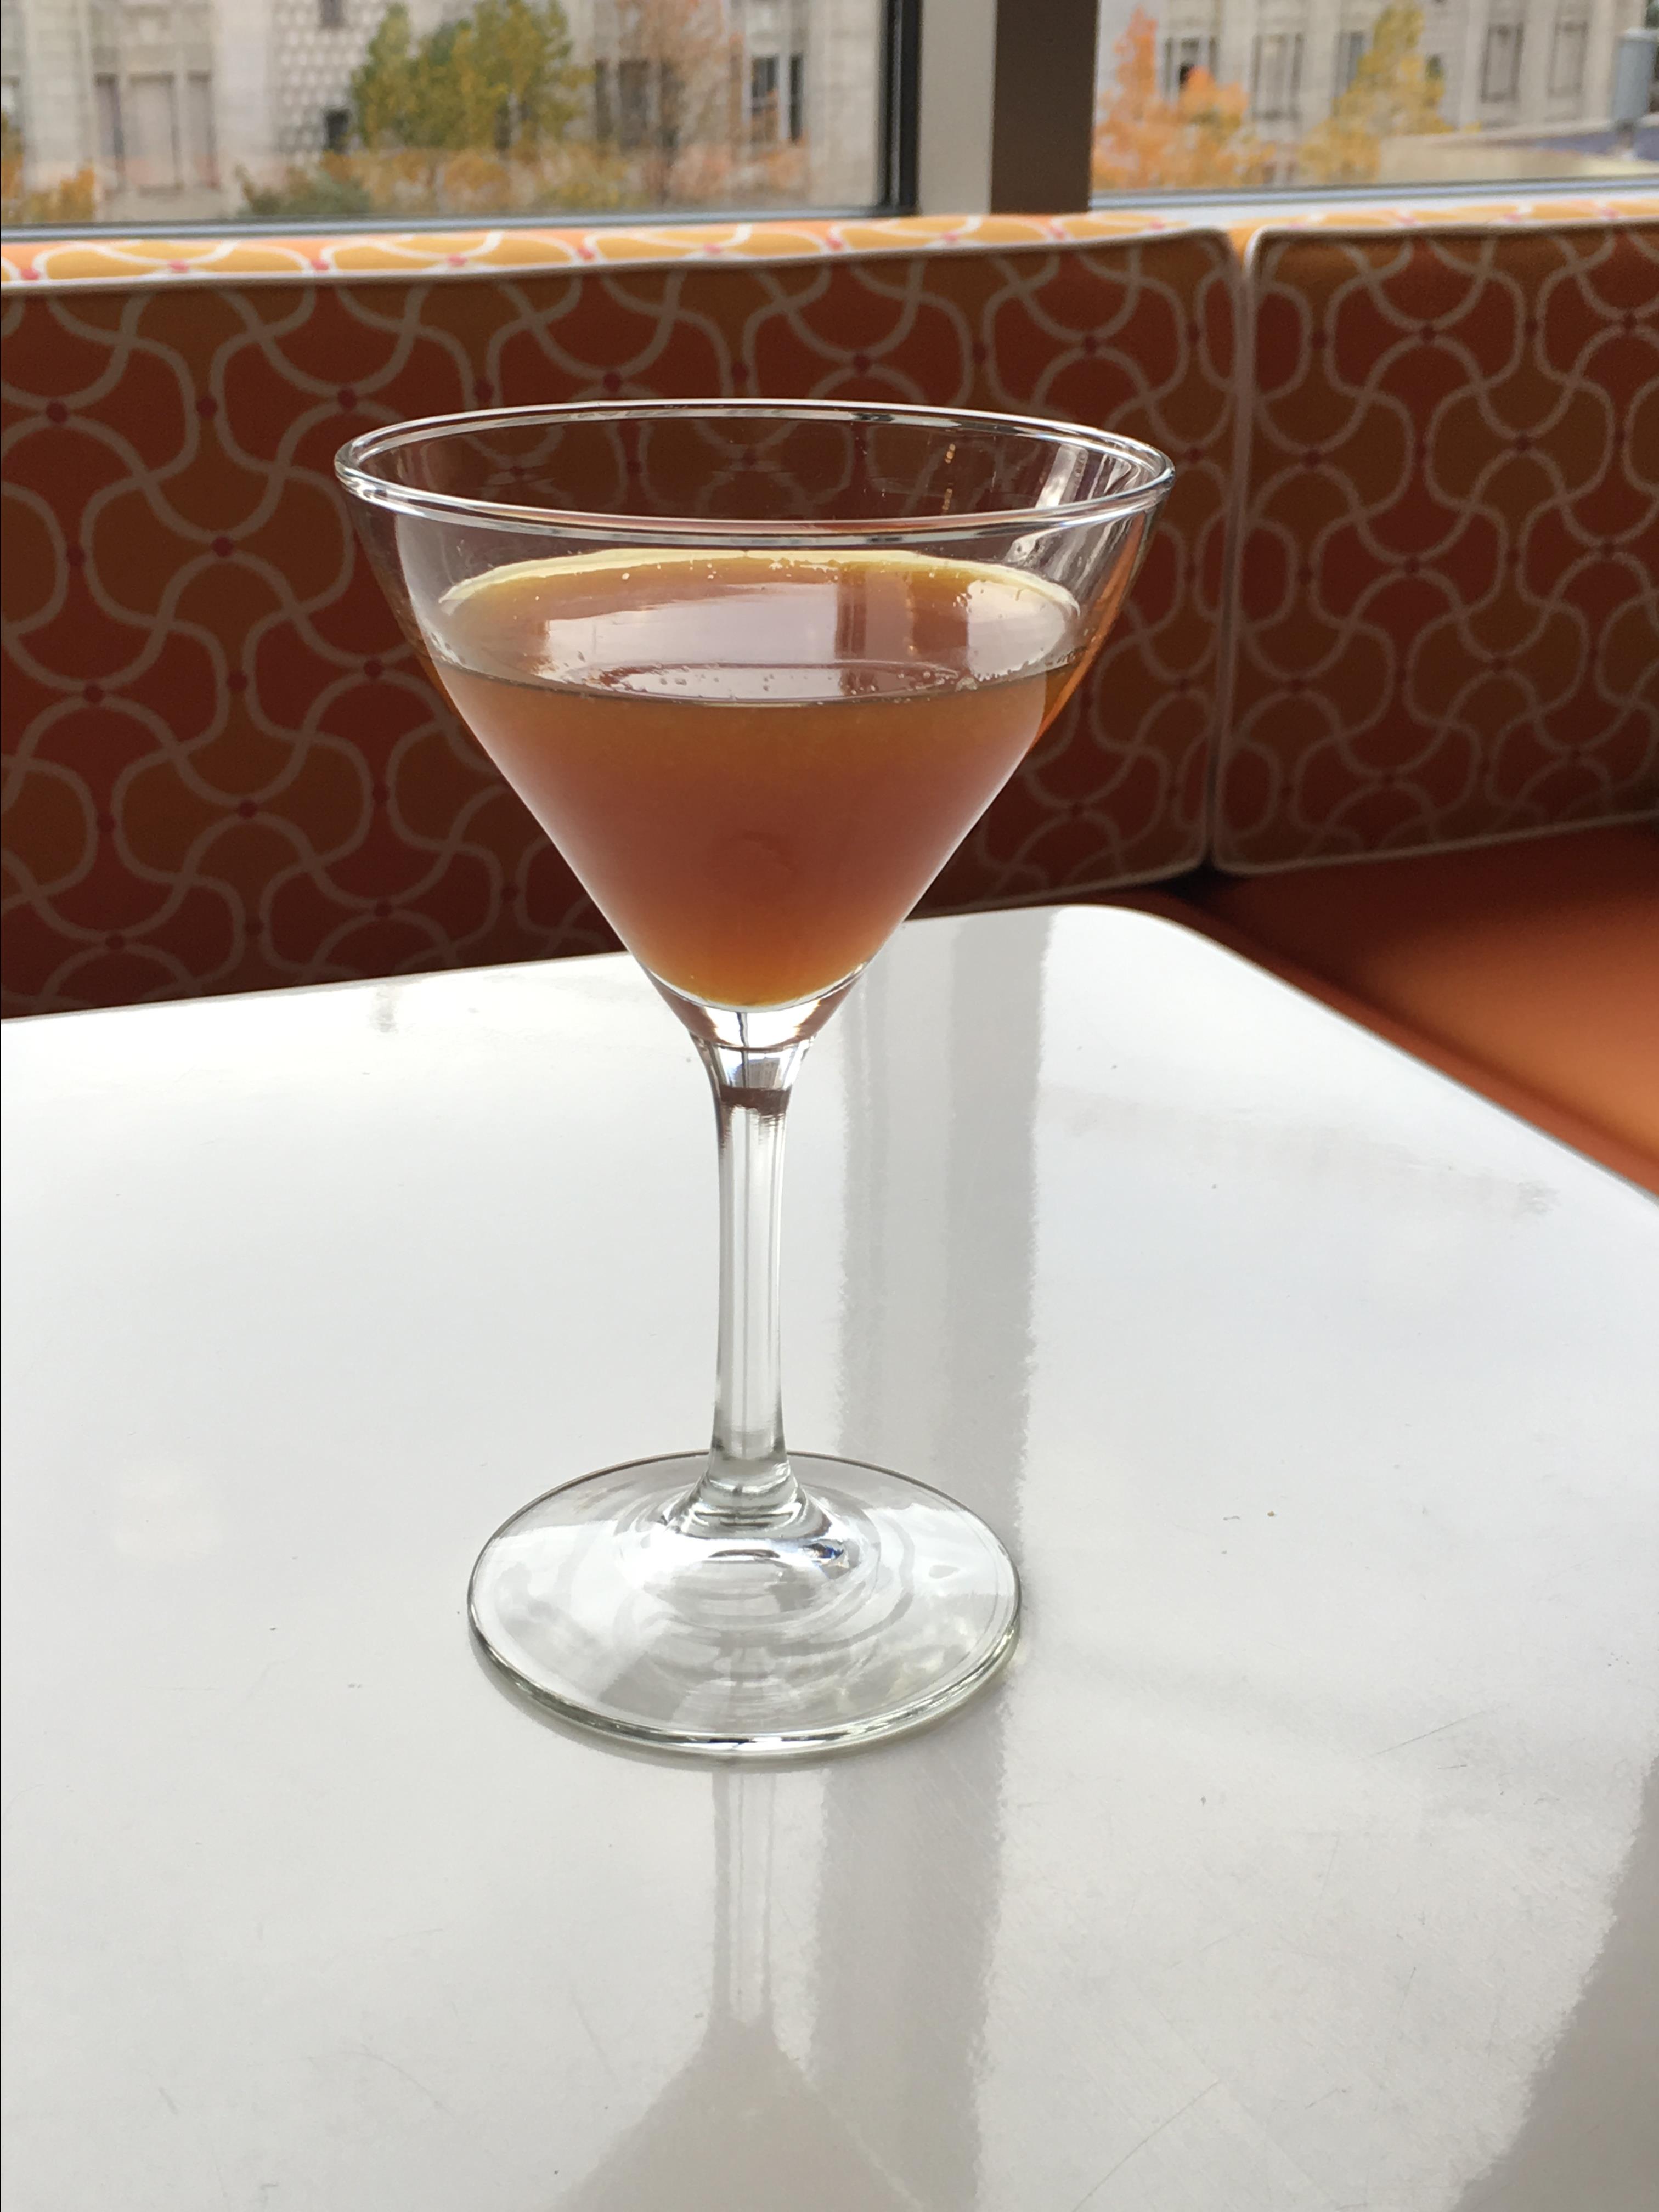 Earl Grey Martini